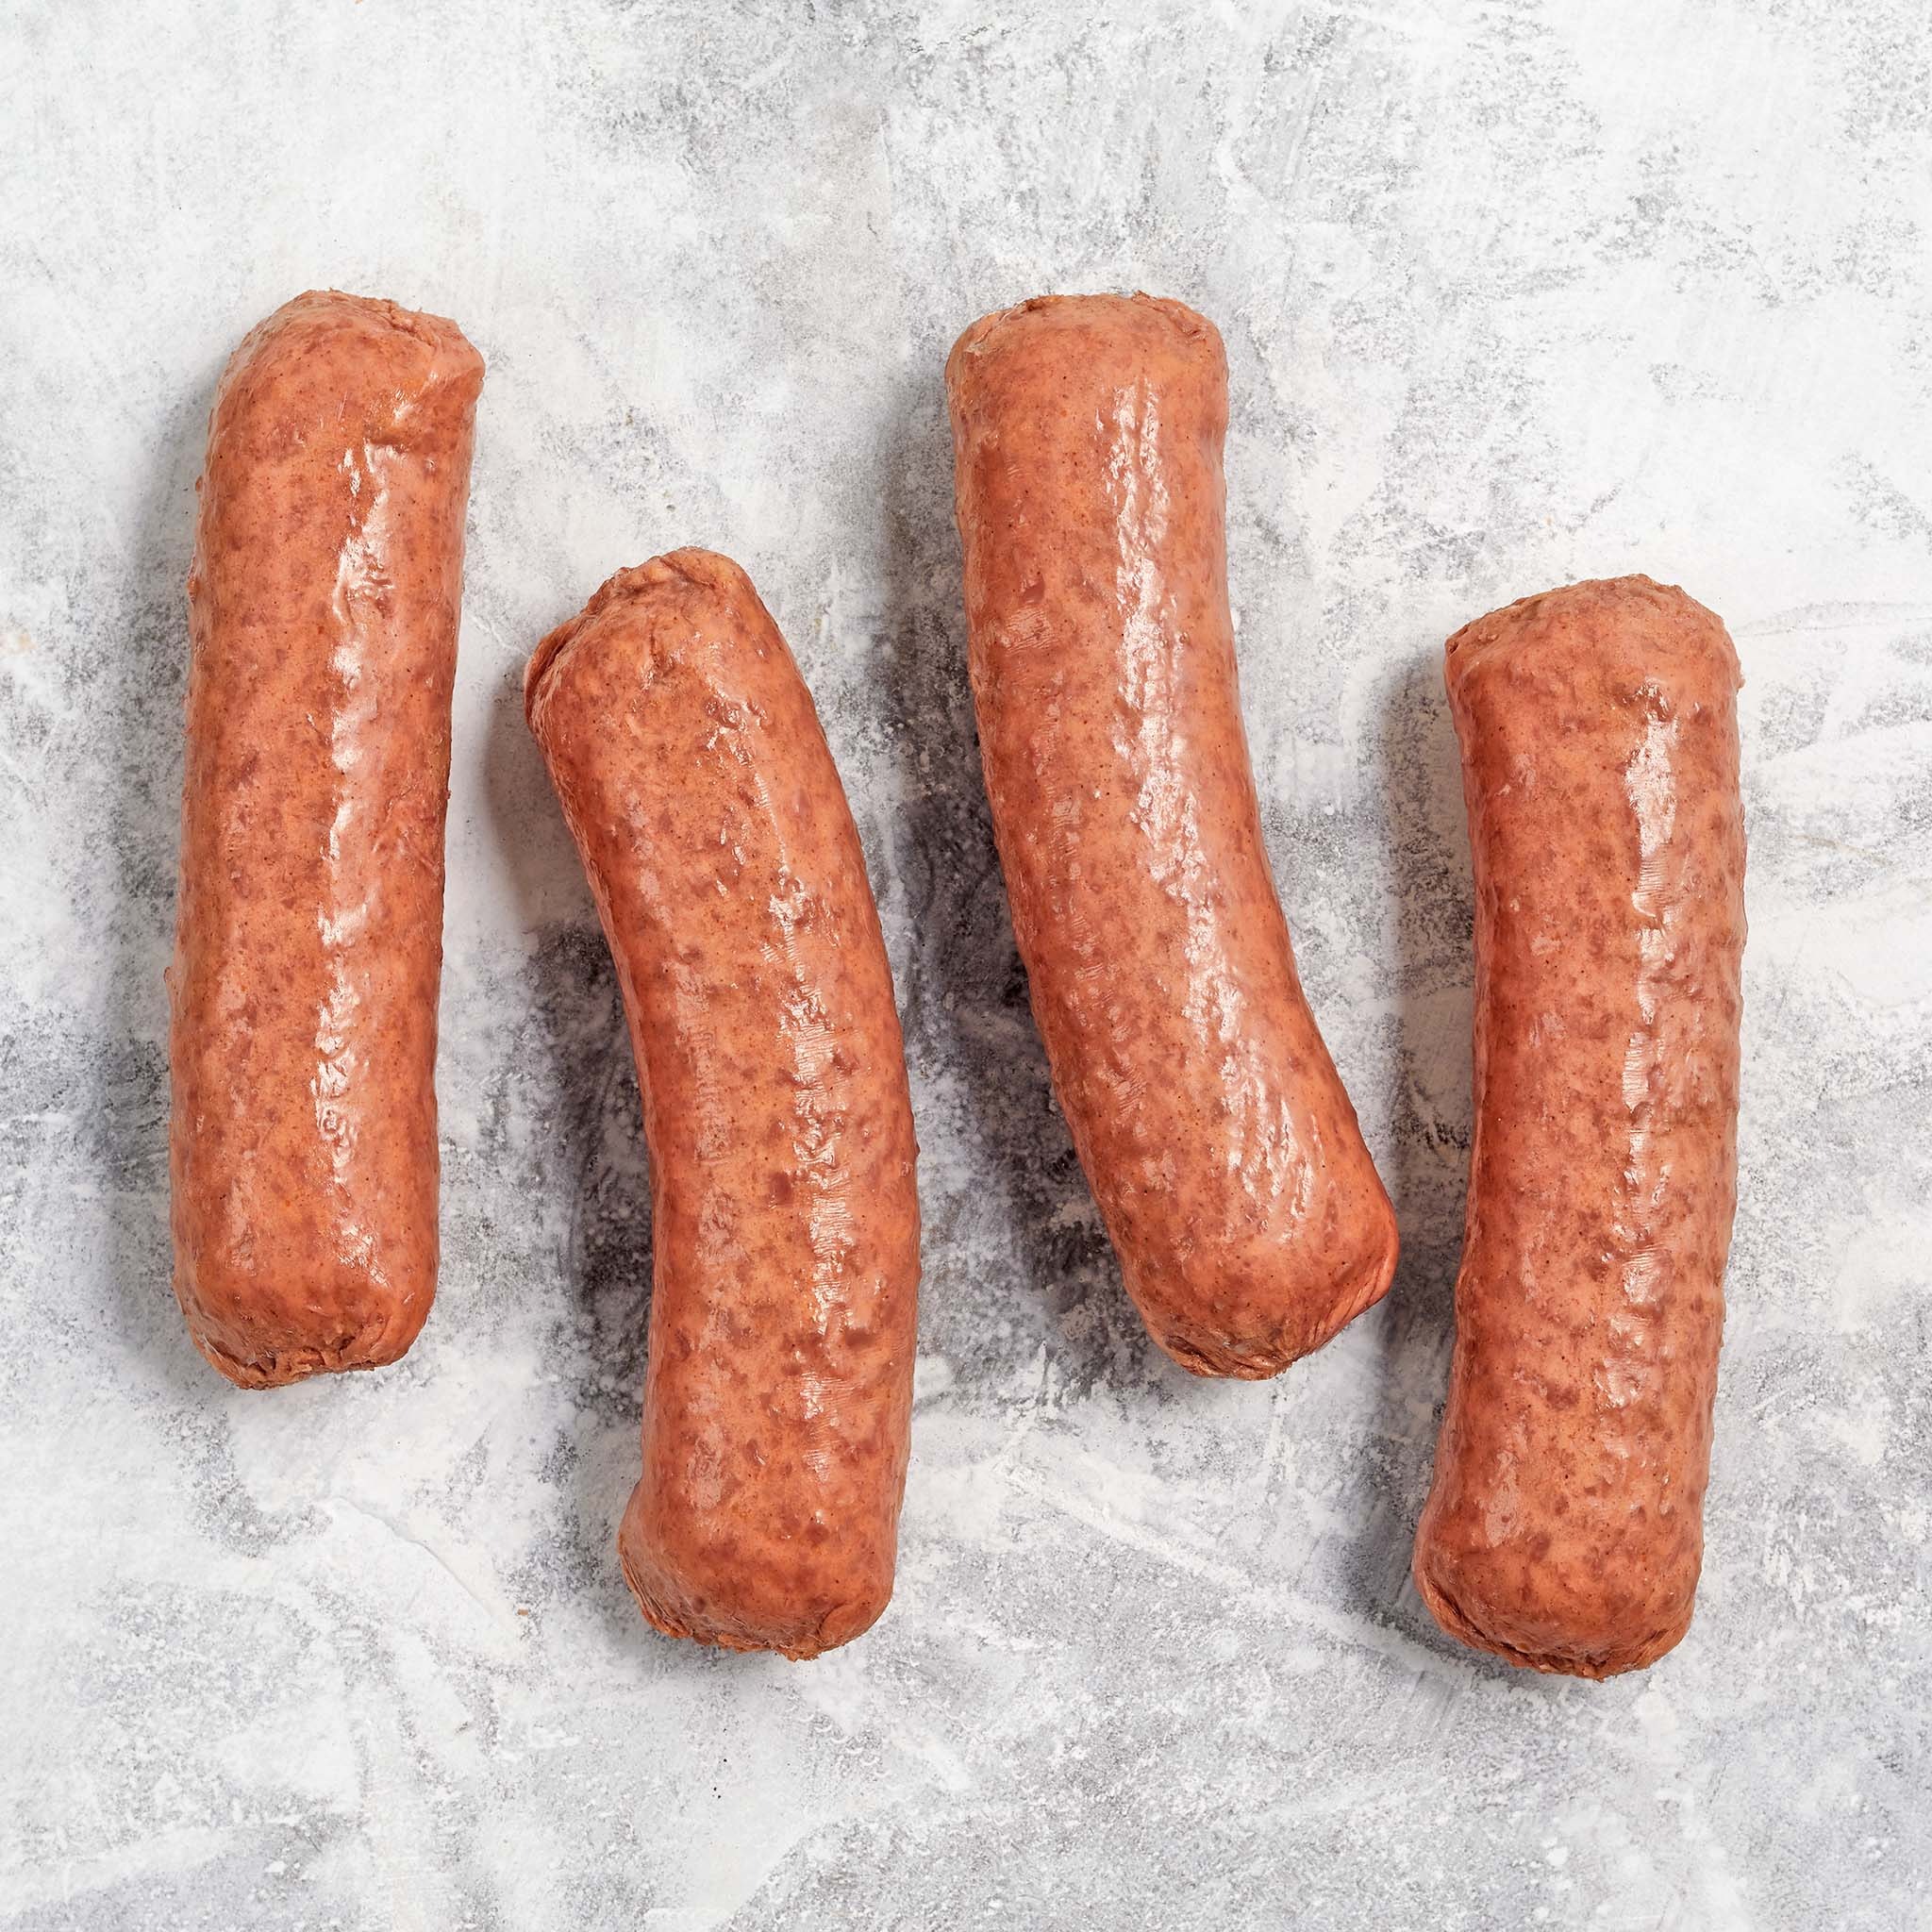 3750 WF Raw Brat Original Sausage - Beyond Meat Plant Based